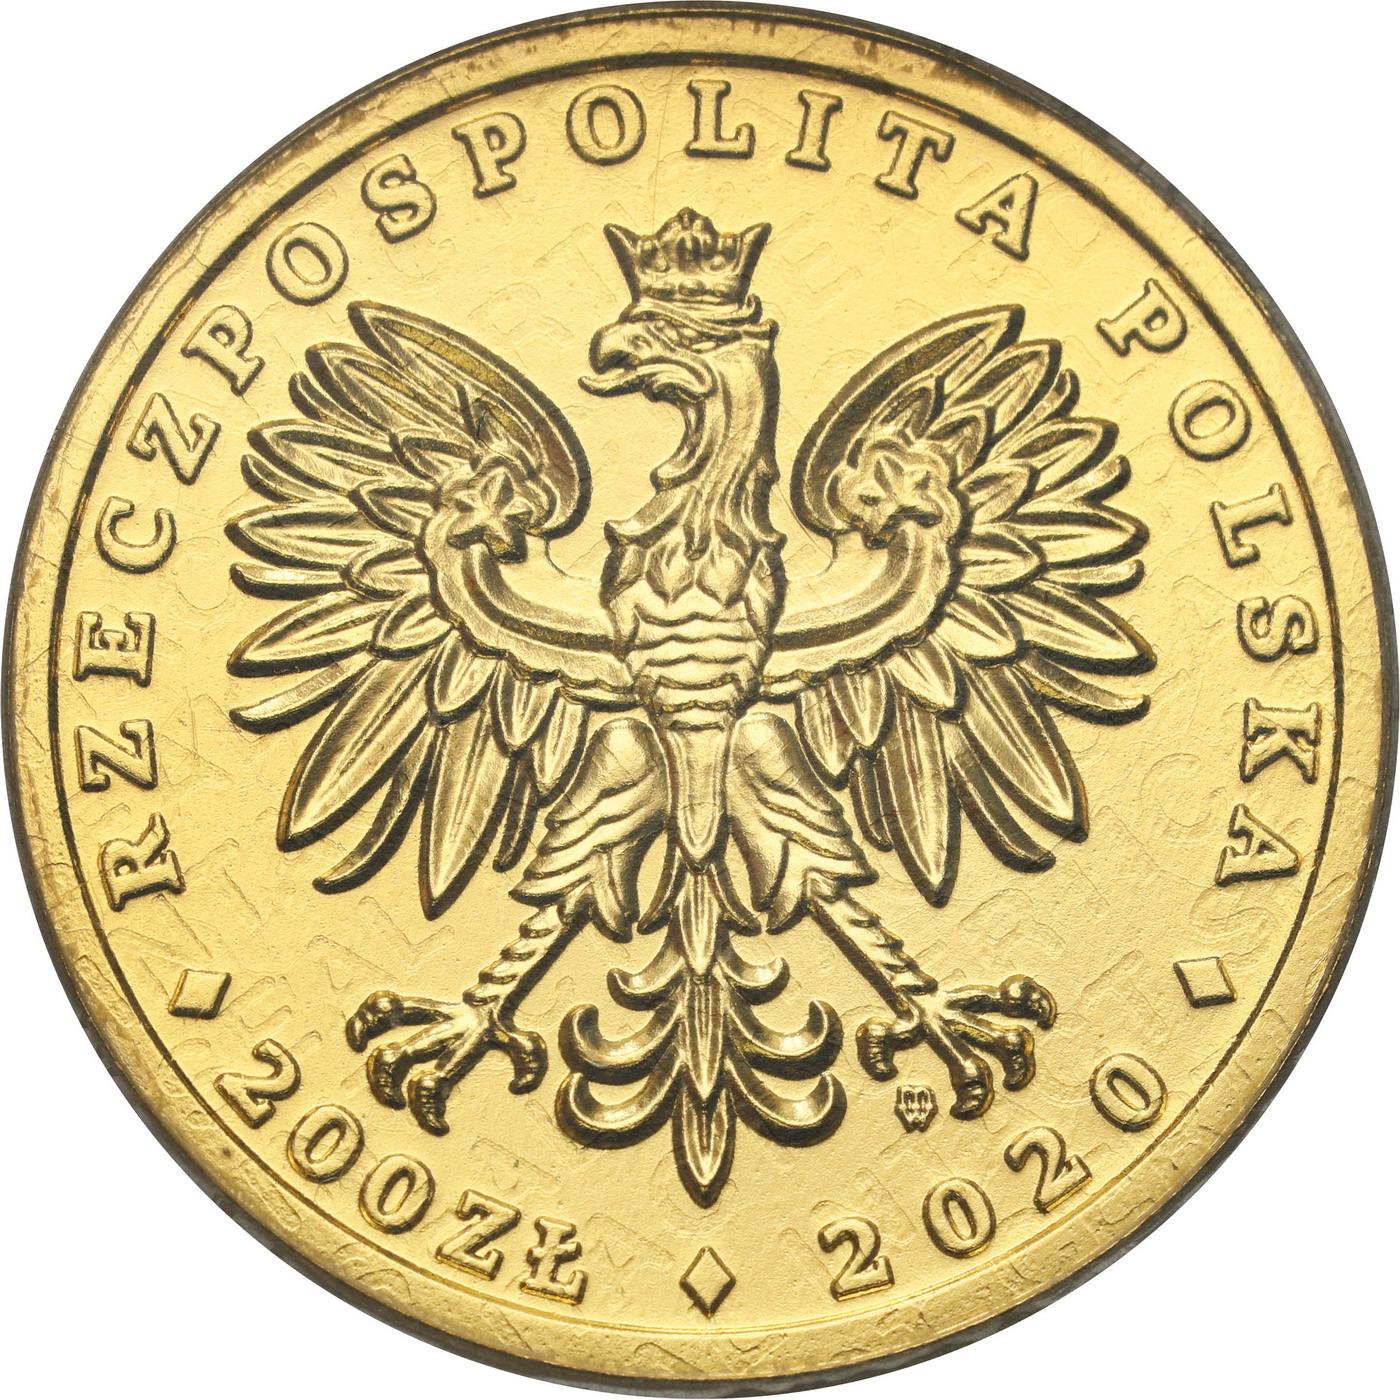 Polska. Złote 200 złotych 2020 Orzeł Bielik - 1/2 uncji złota